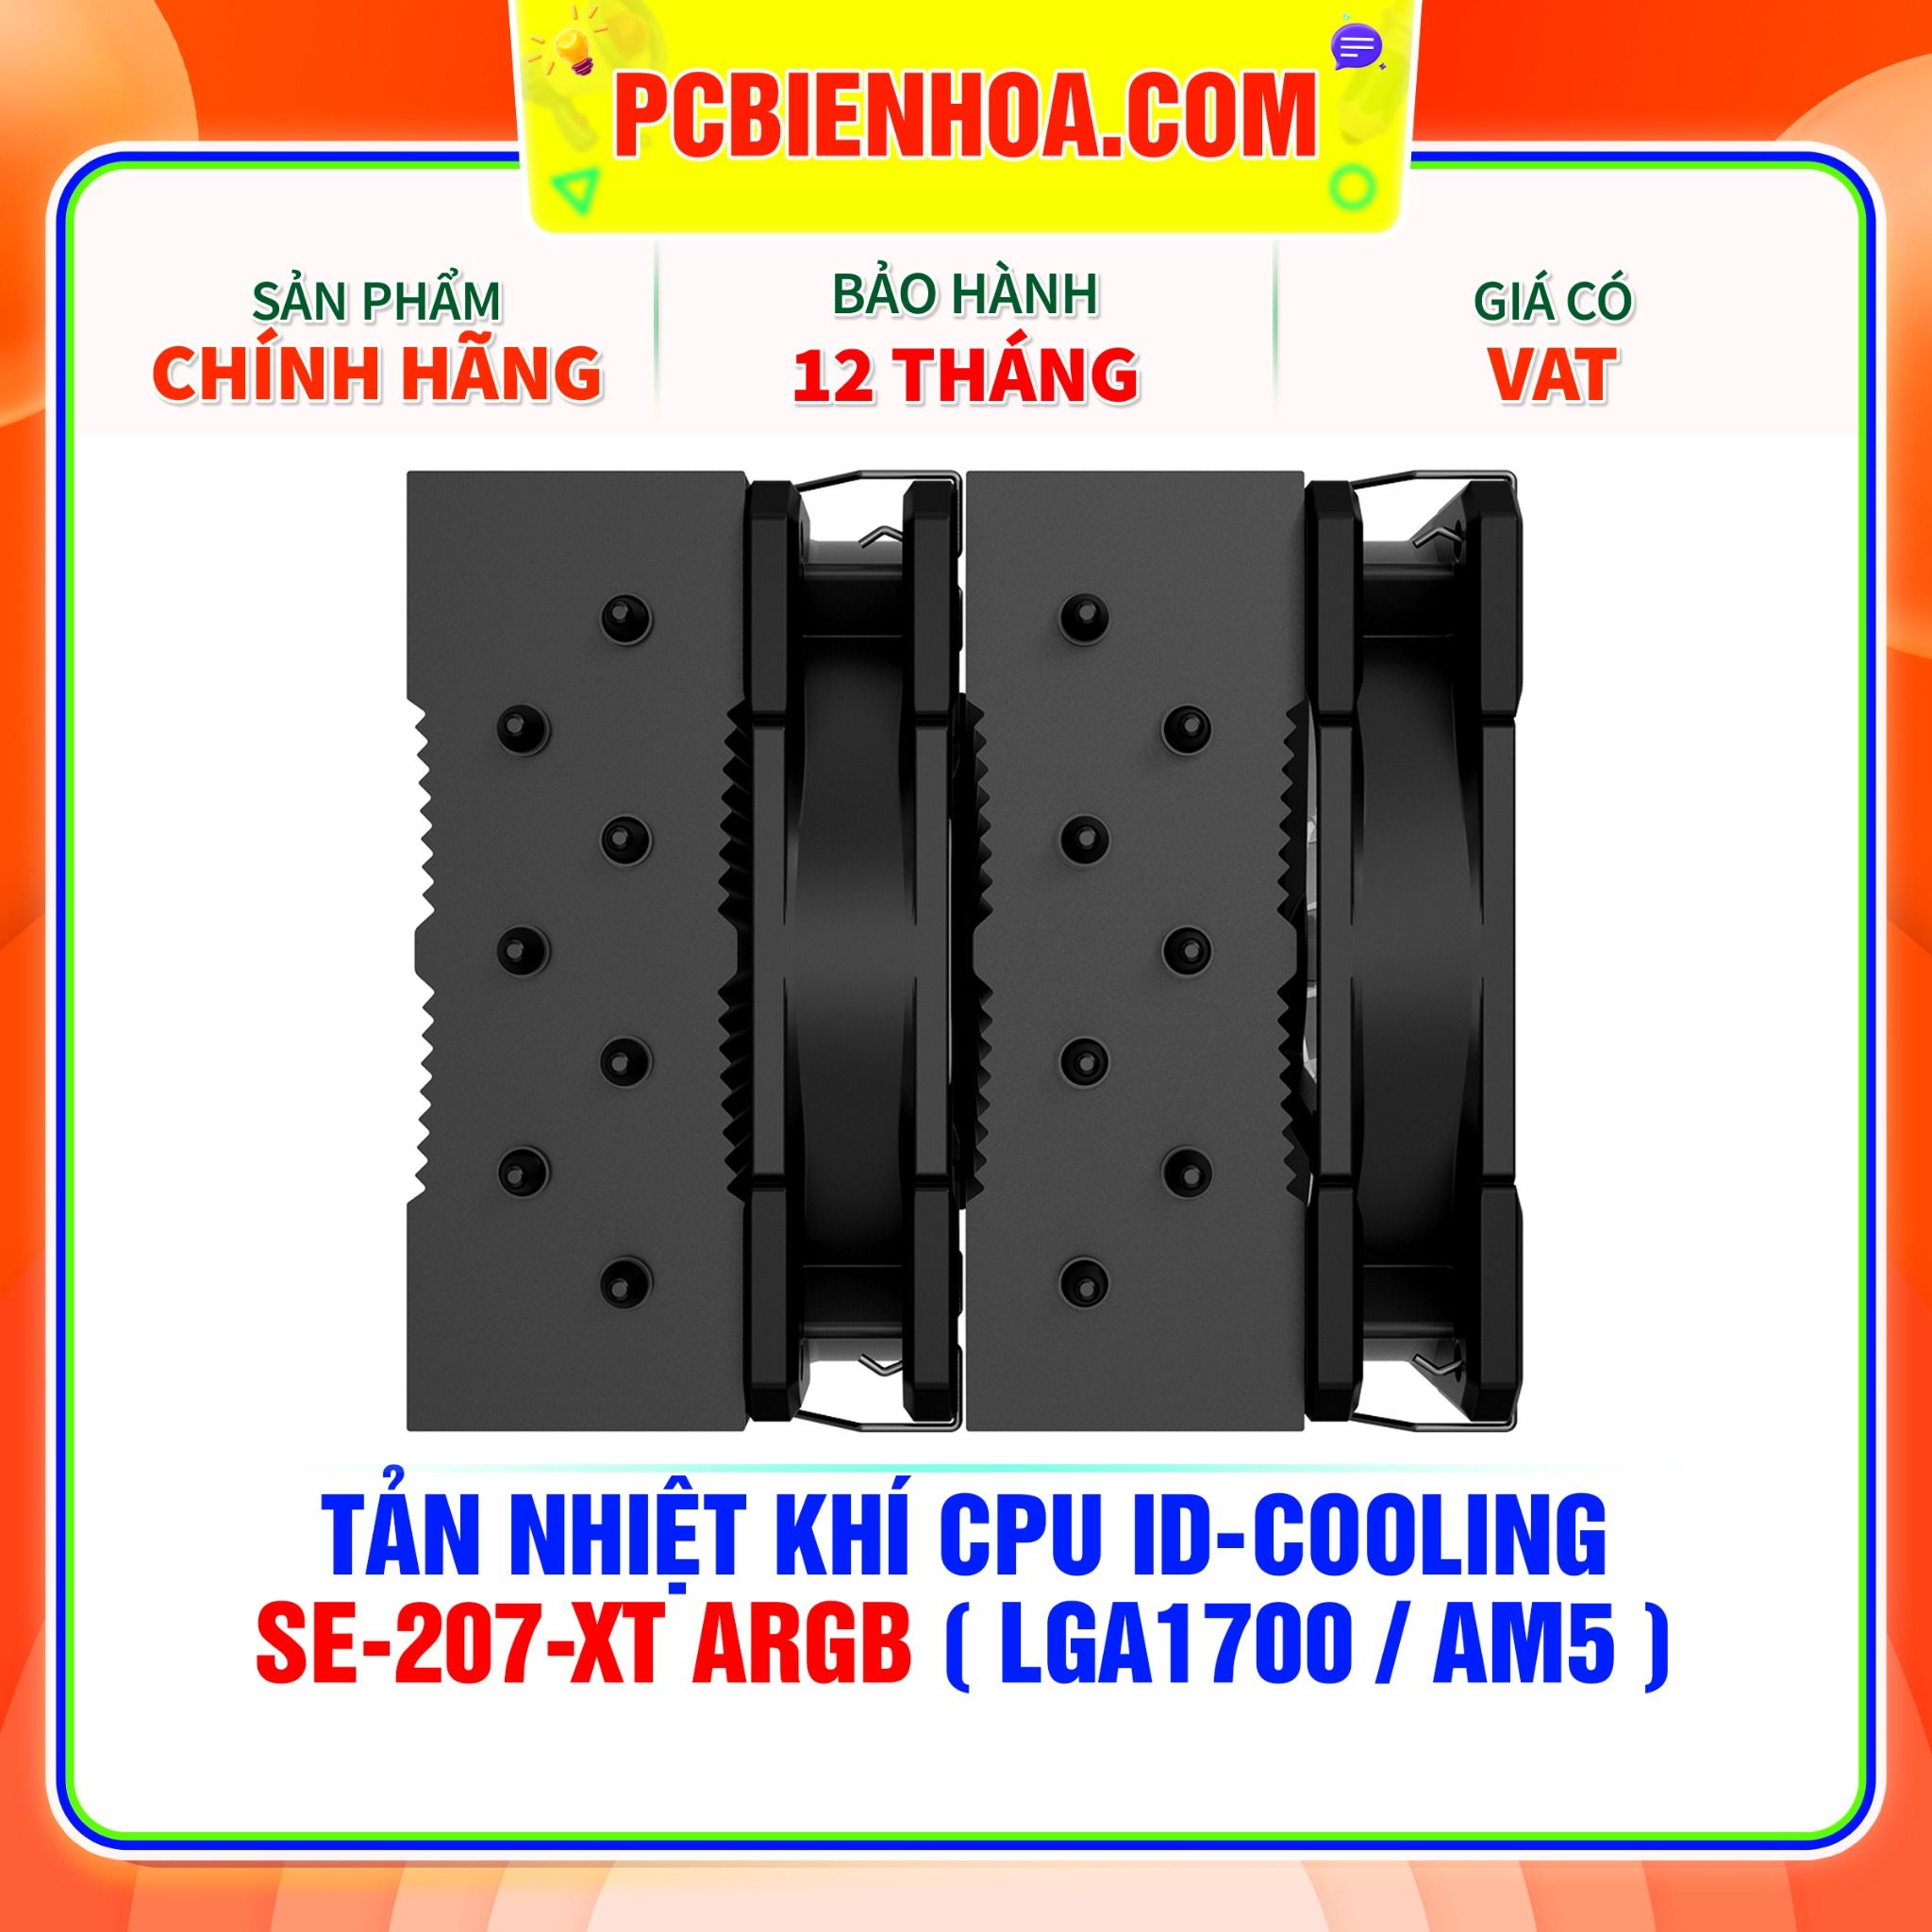  TẢN NHIỆT KHÍ CPU ID-COOLING SE-207-XT ARGB BLACK ( HỖ TRỢ SOCKET LGA1700 / AM5 ) 